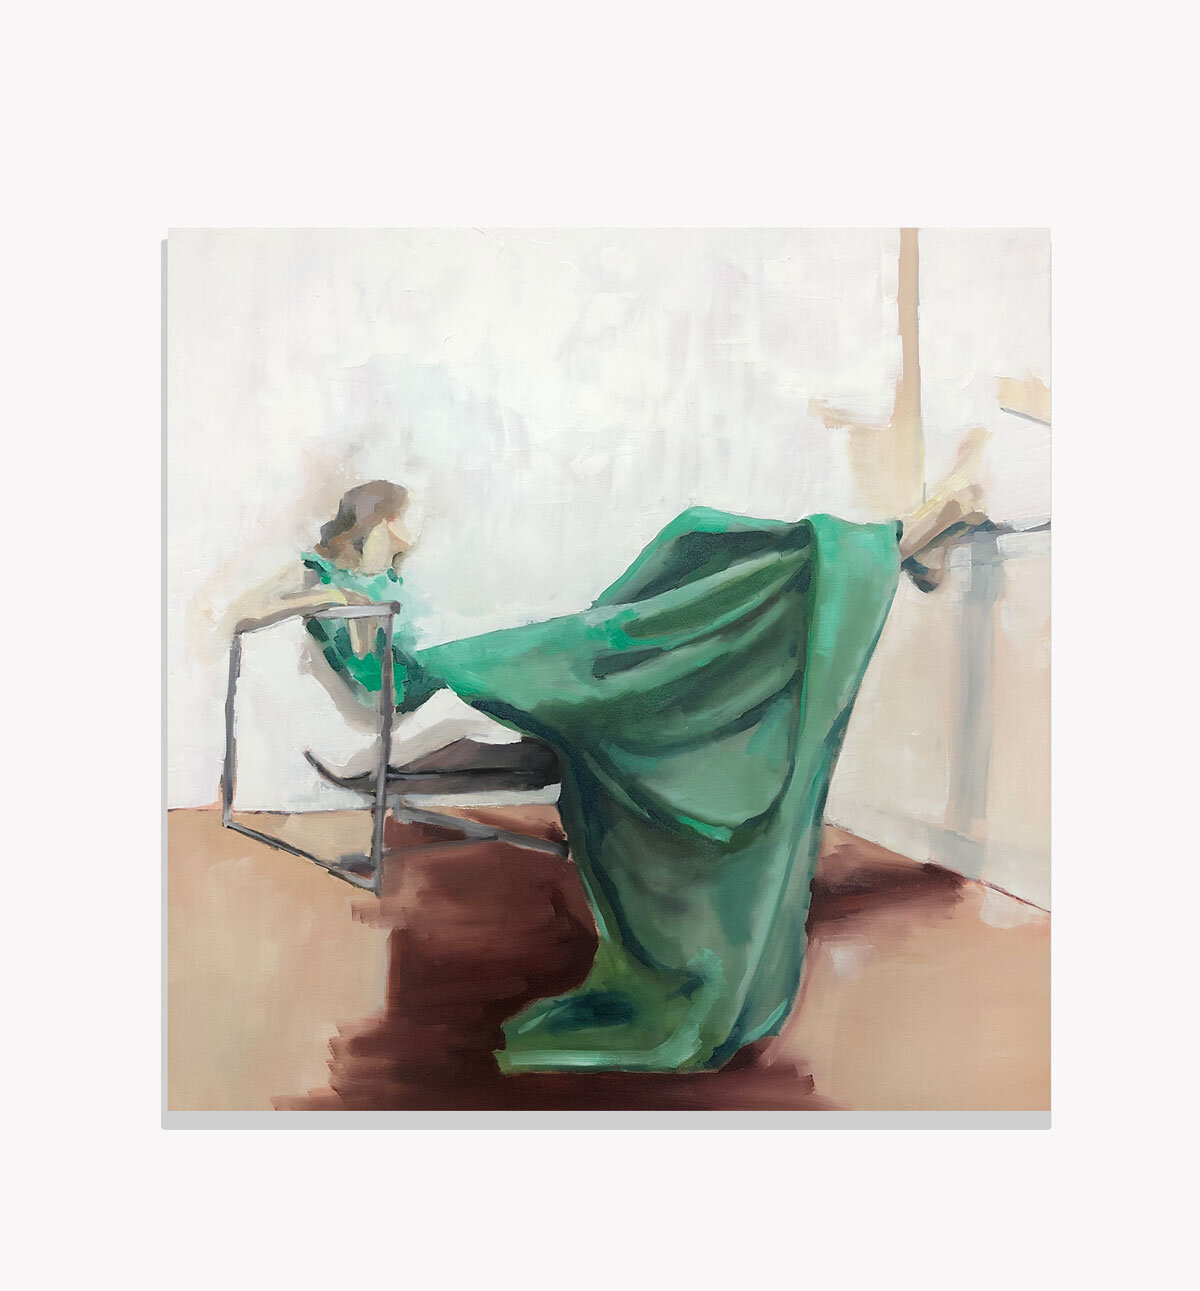   Green Solitude , Kristi Head 2020. Oil on canvas 30 x 30 inches. 